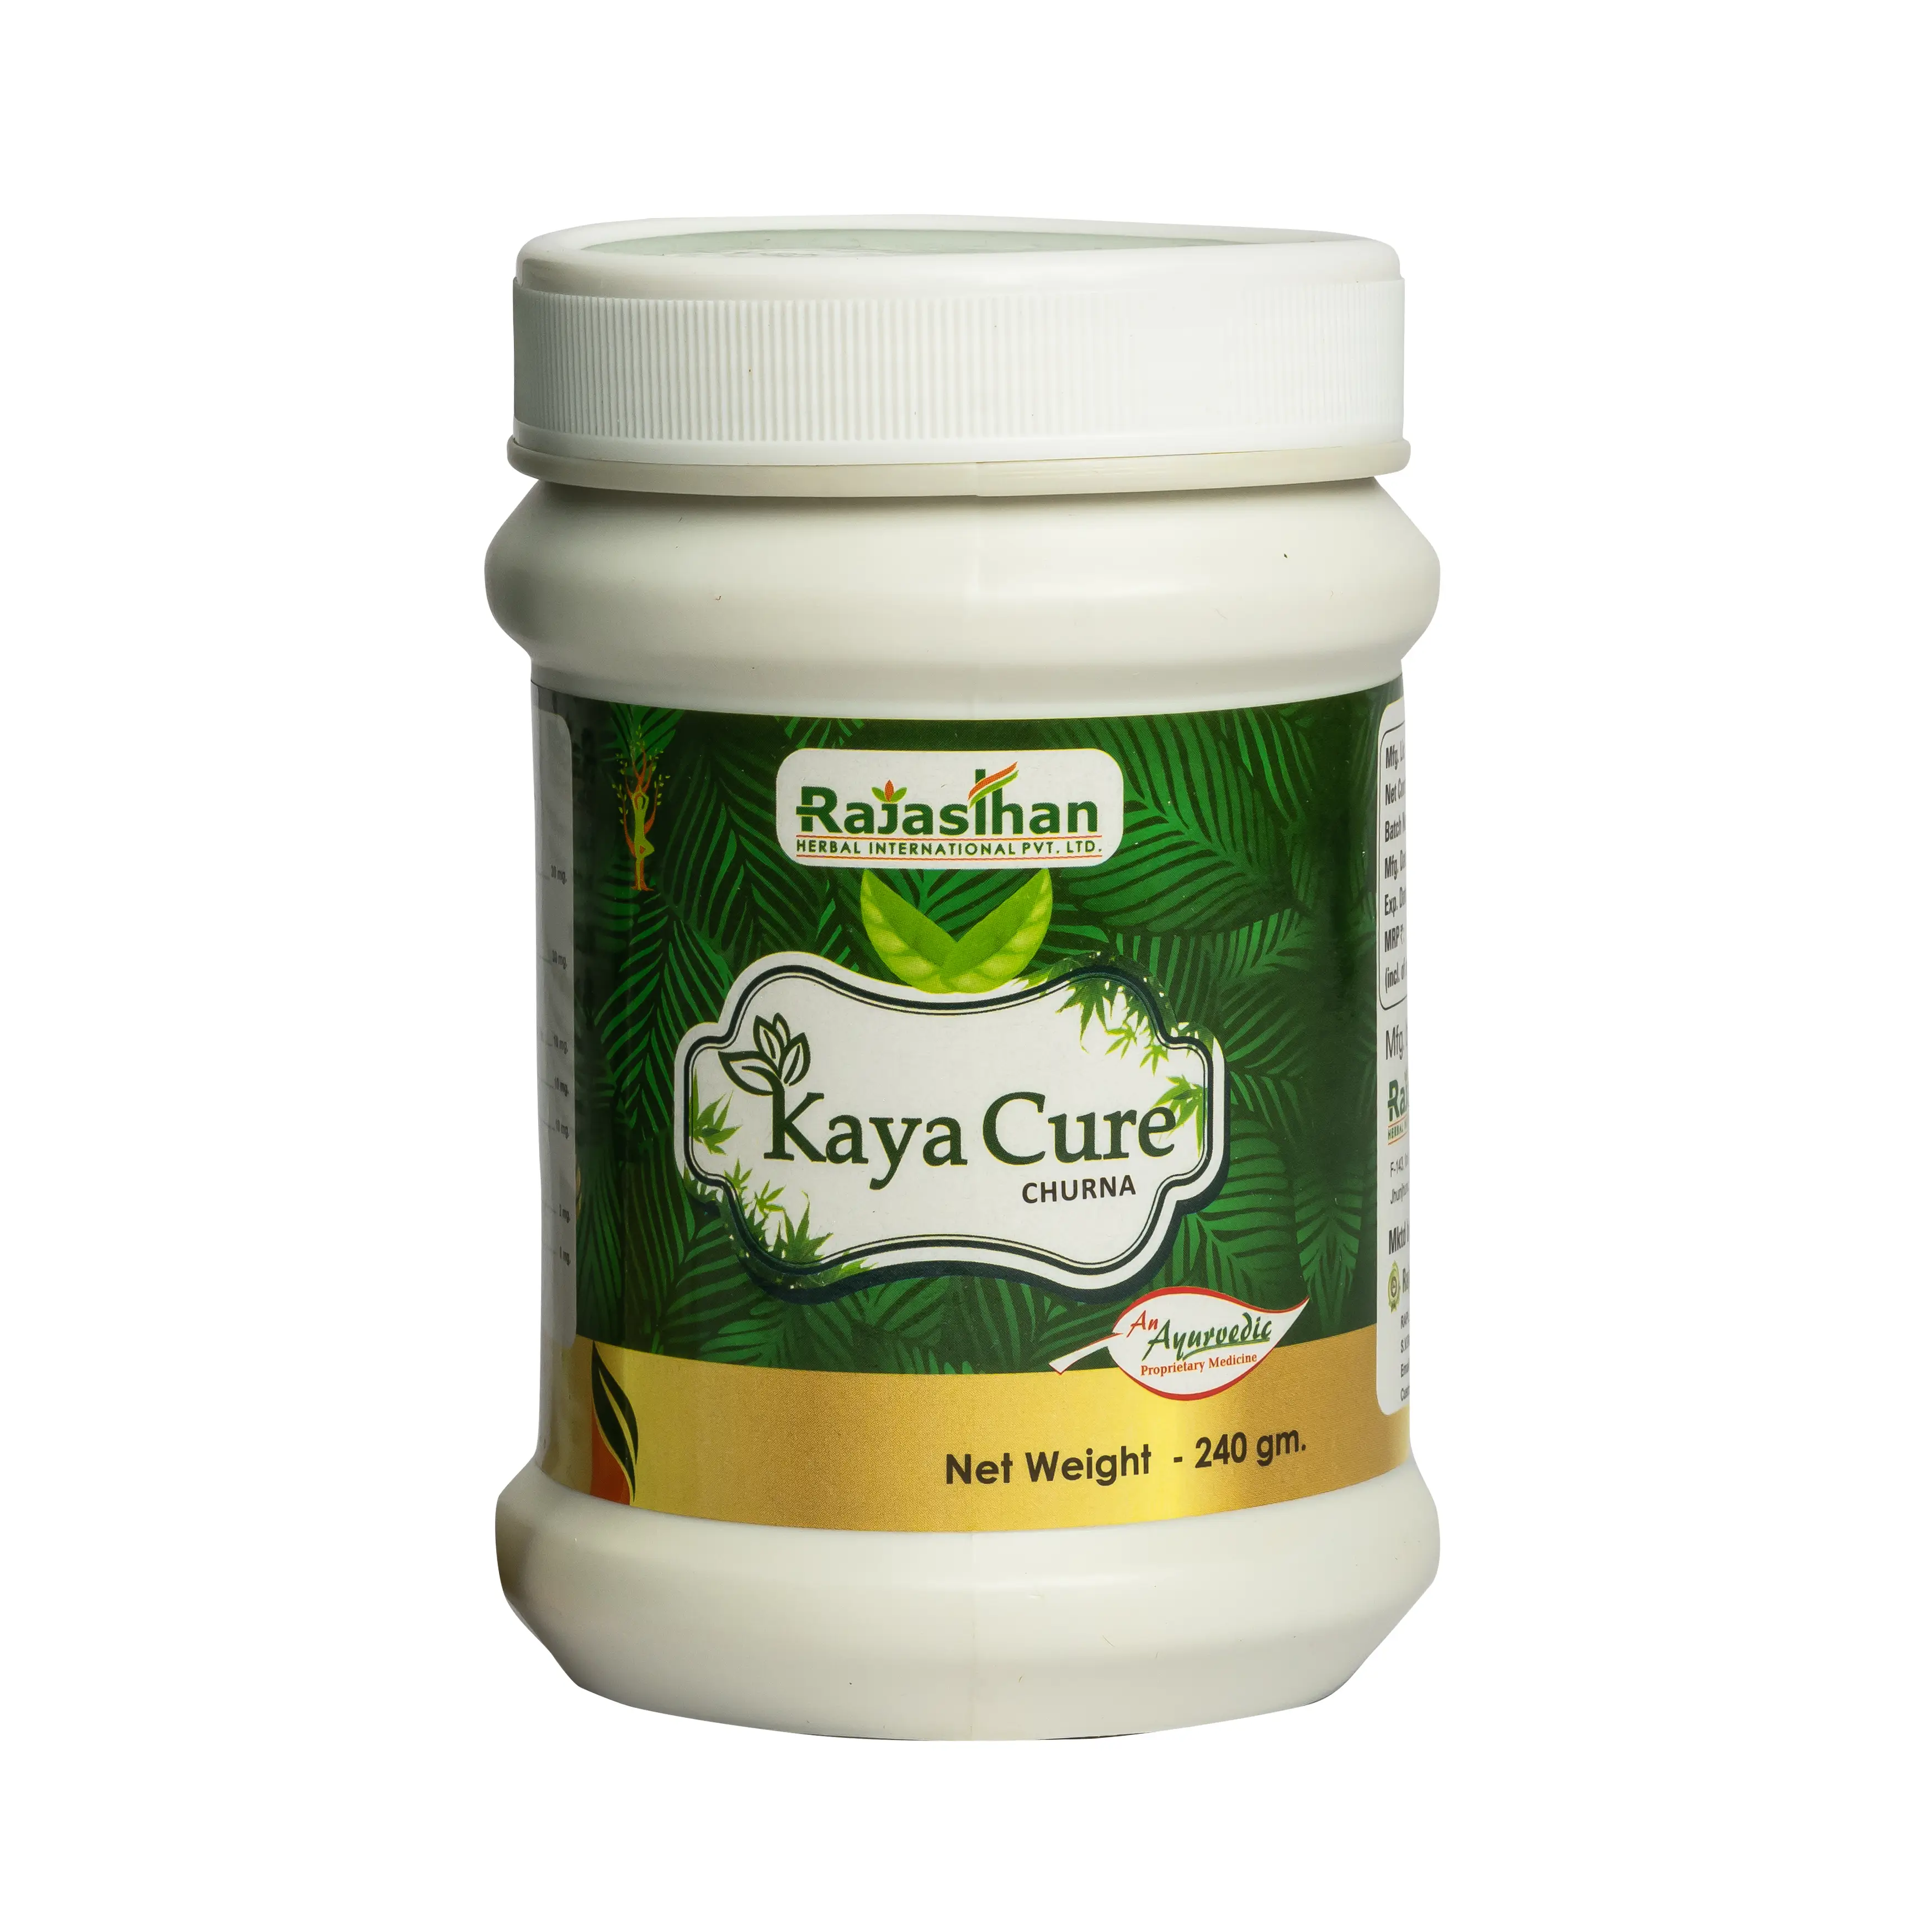 Kaya Cure Churna 240gm